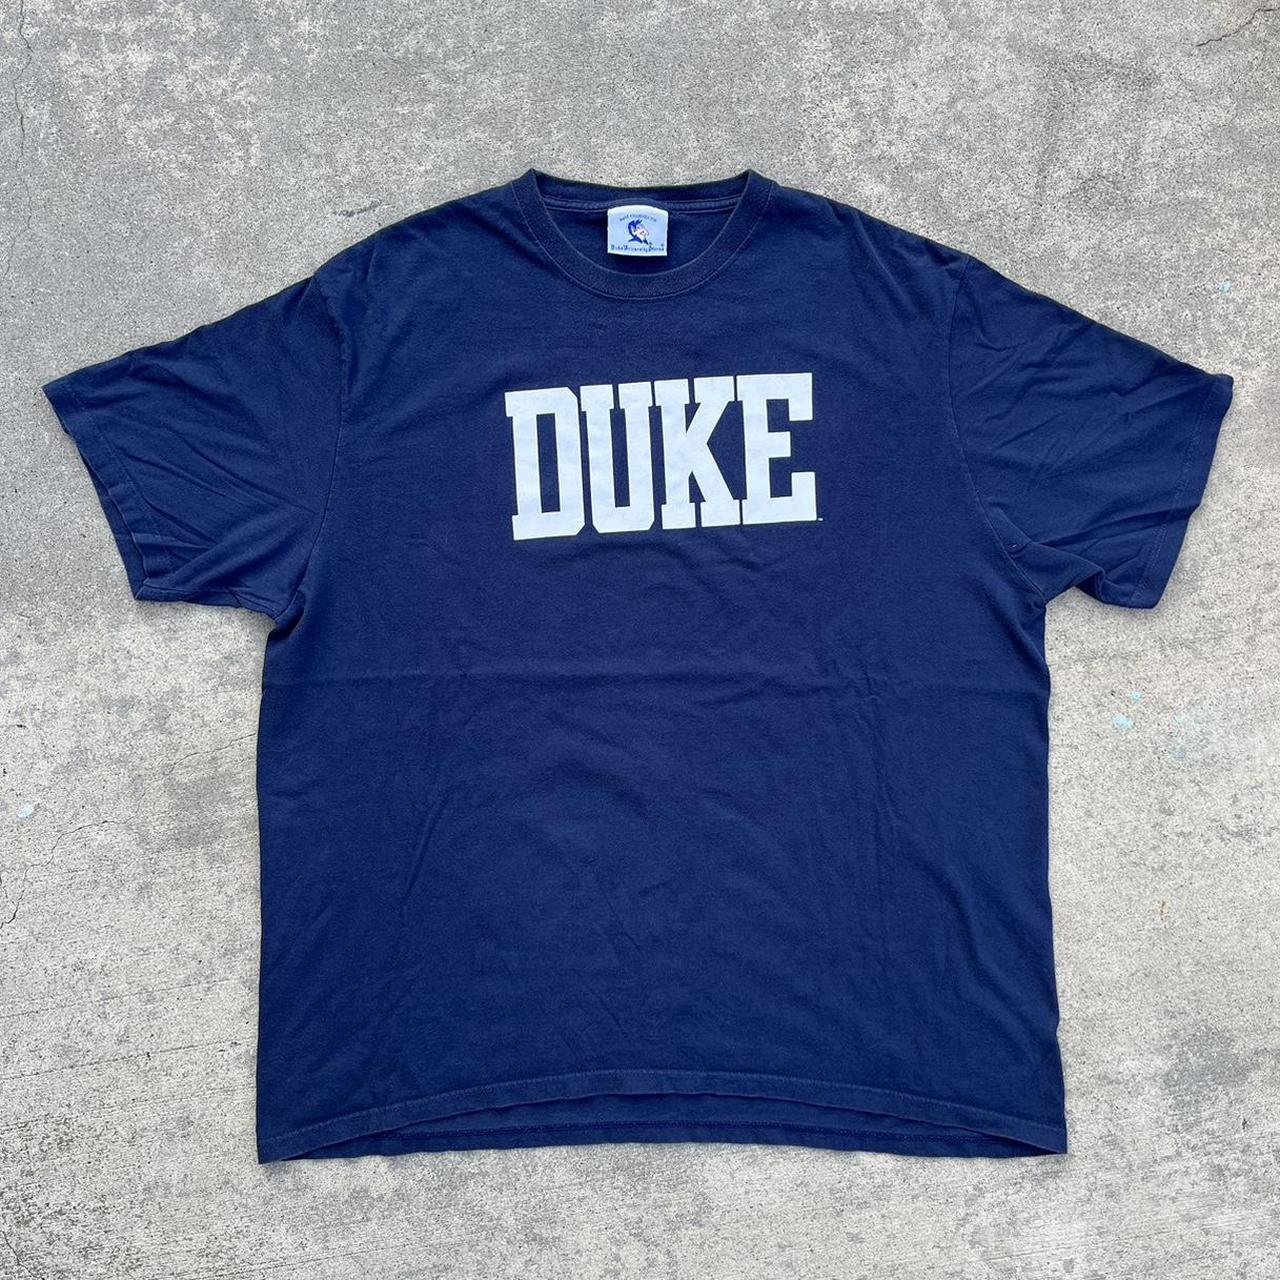 Duke Men's Navy T-shirt